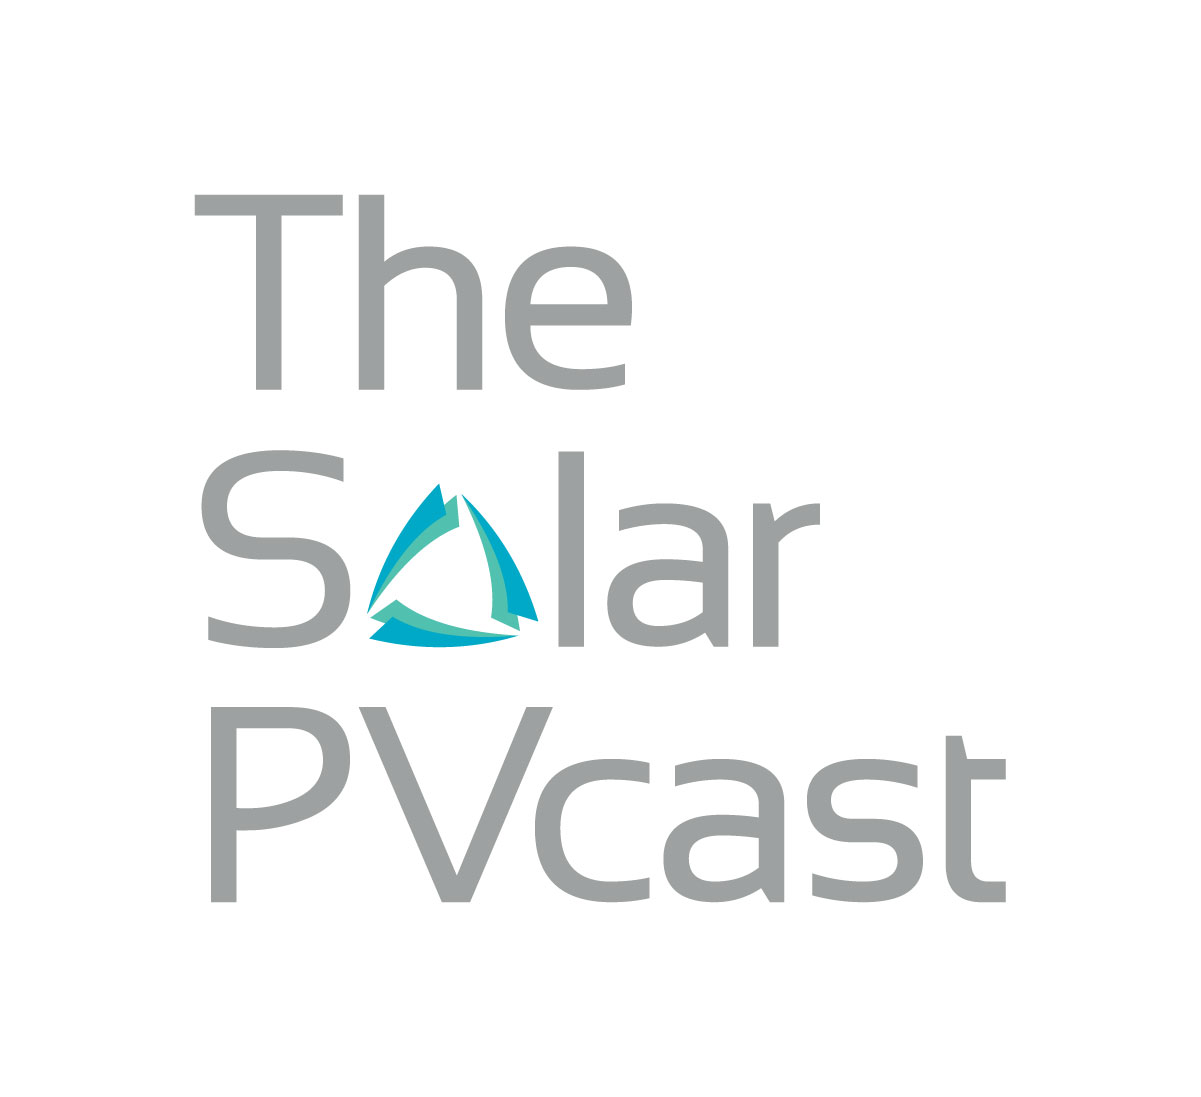 Revolutionizing Solar with Perovskite Technology